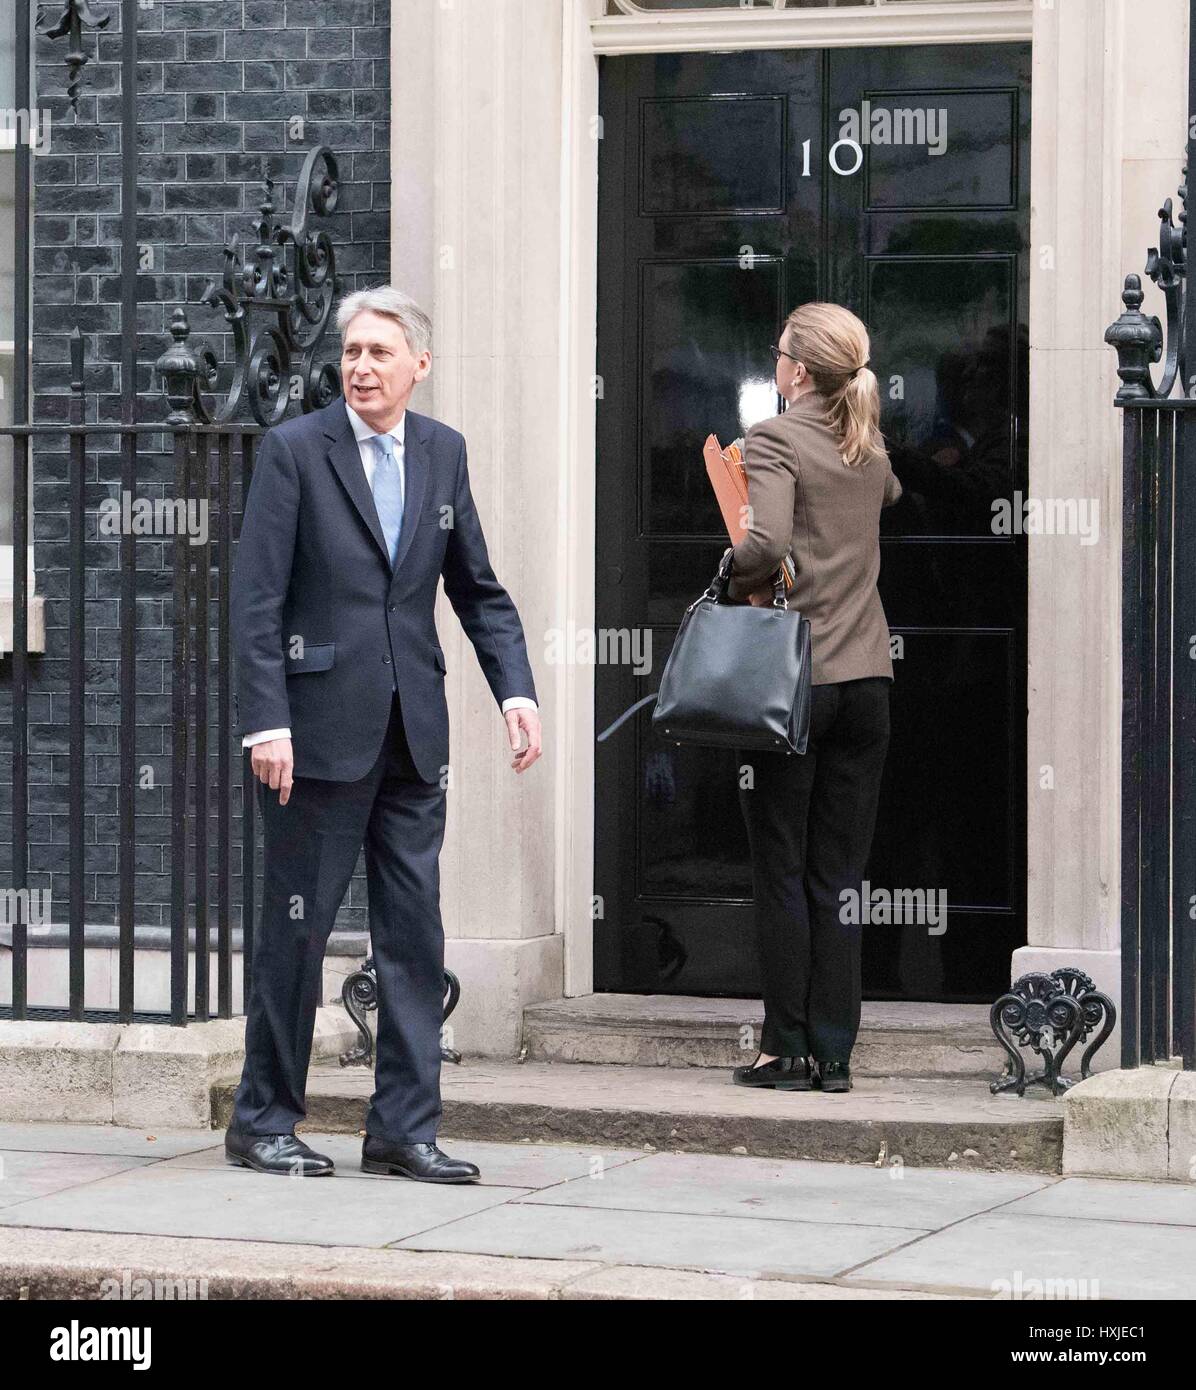 Londra, Regno Unito. 29 Mar, 2017. Brexit riunione del gabinetto - Phillip Hammond arriva Credito: Ian Davidson/Alamy Live News Foto Stock